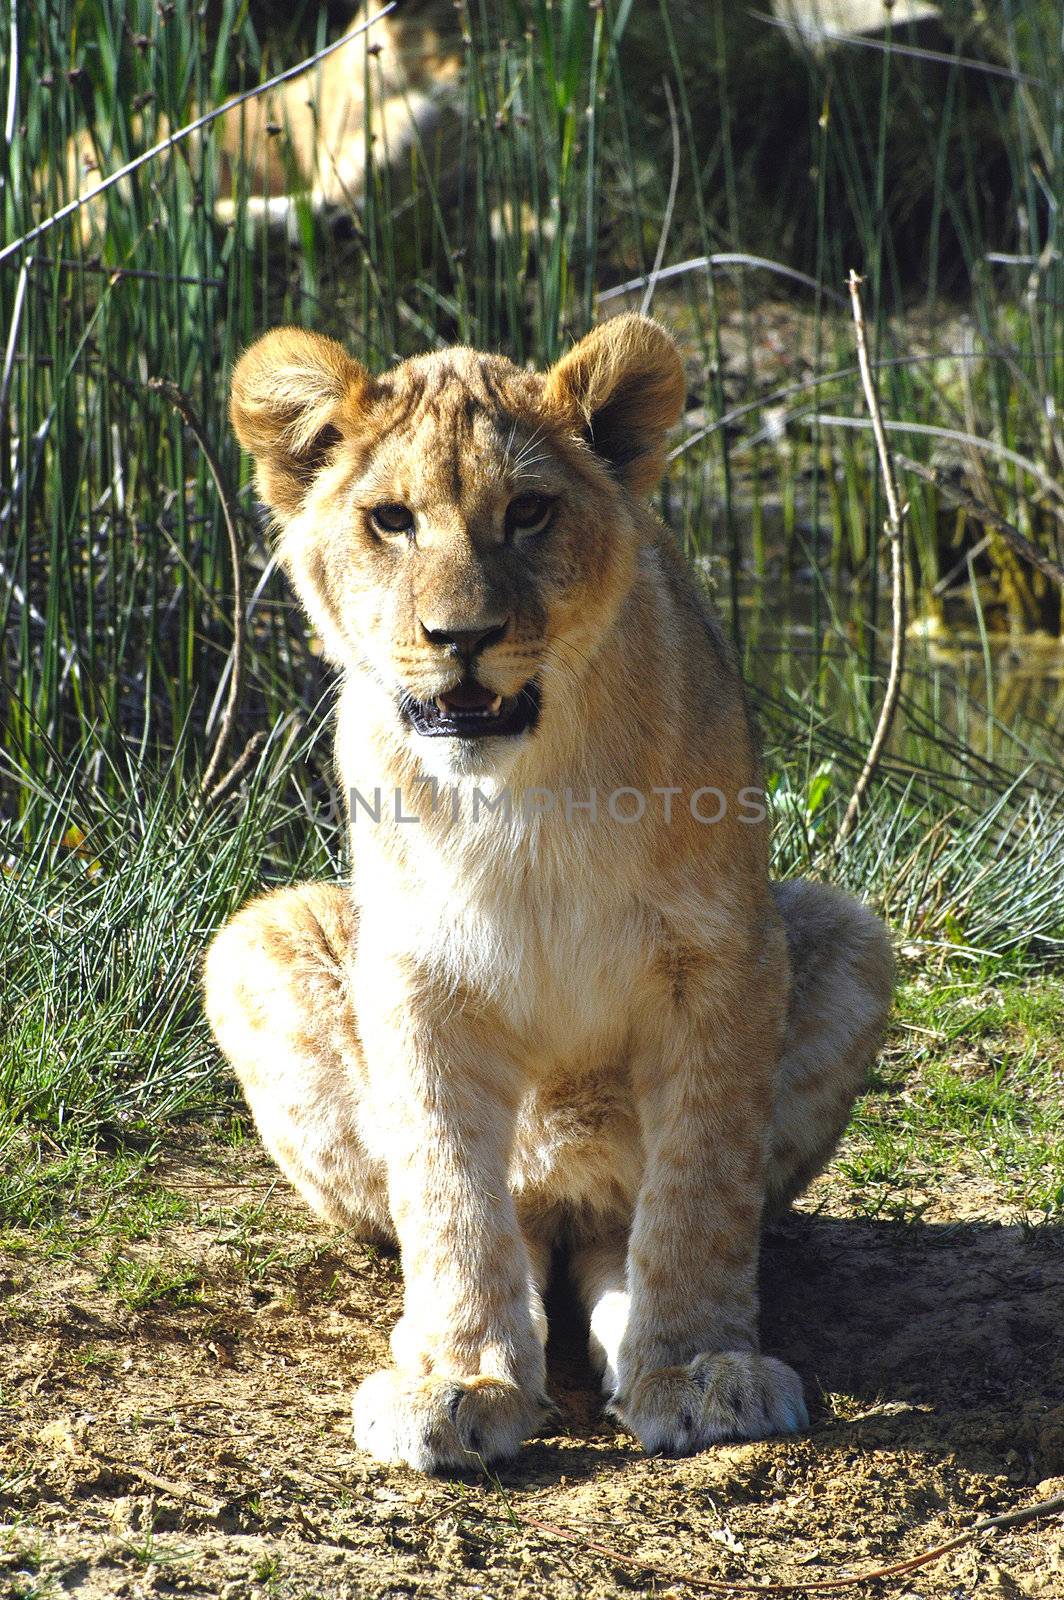 Portrait of a Lion Cub by gillespaire